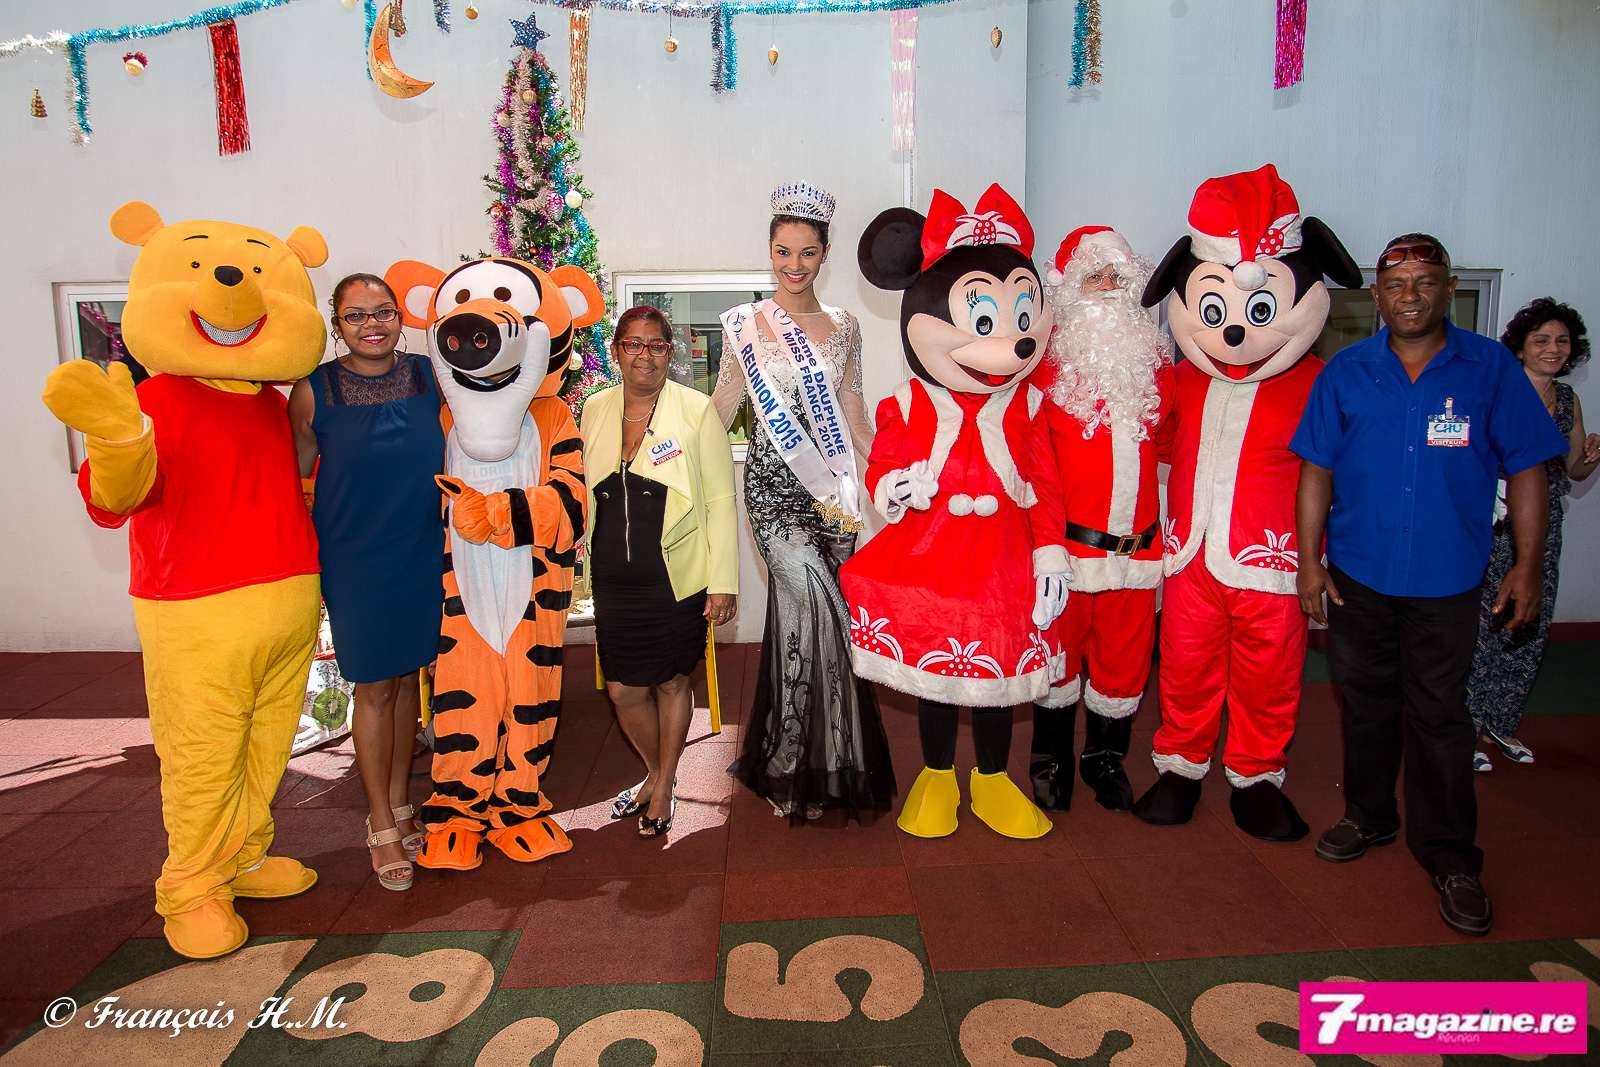 Noël des enfants malades au CHU<br>Miss Réunion et le Père Noël au rendez-vous